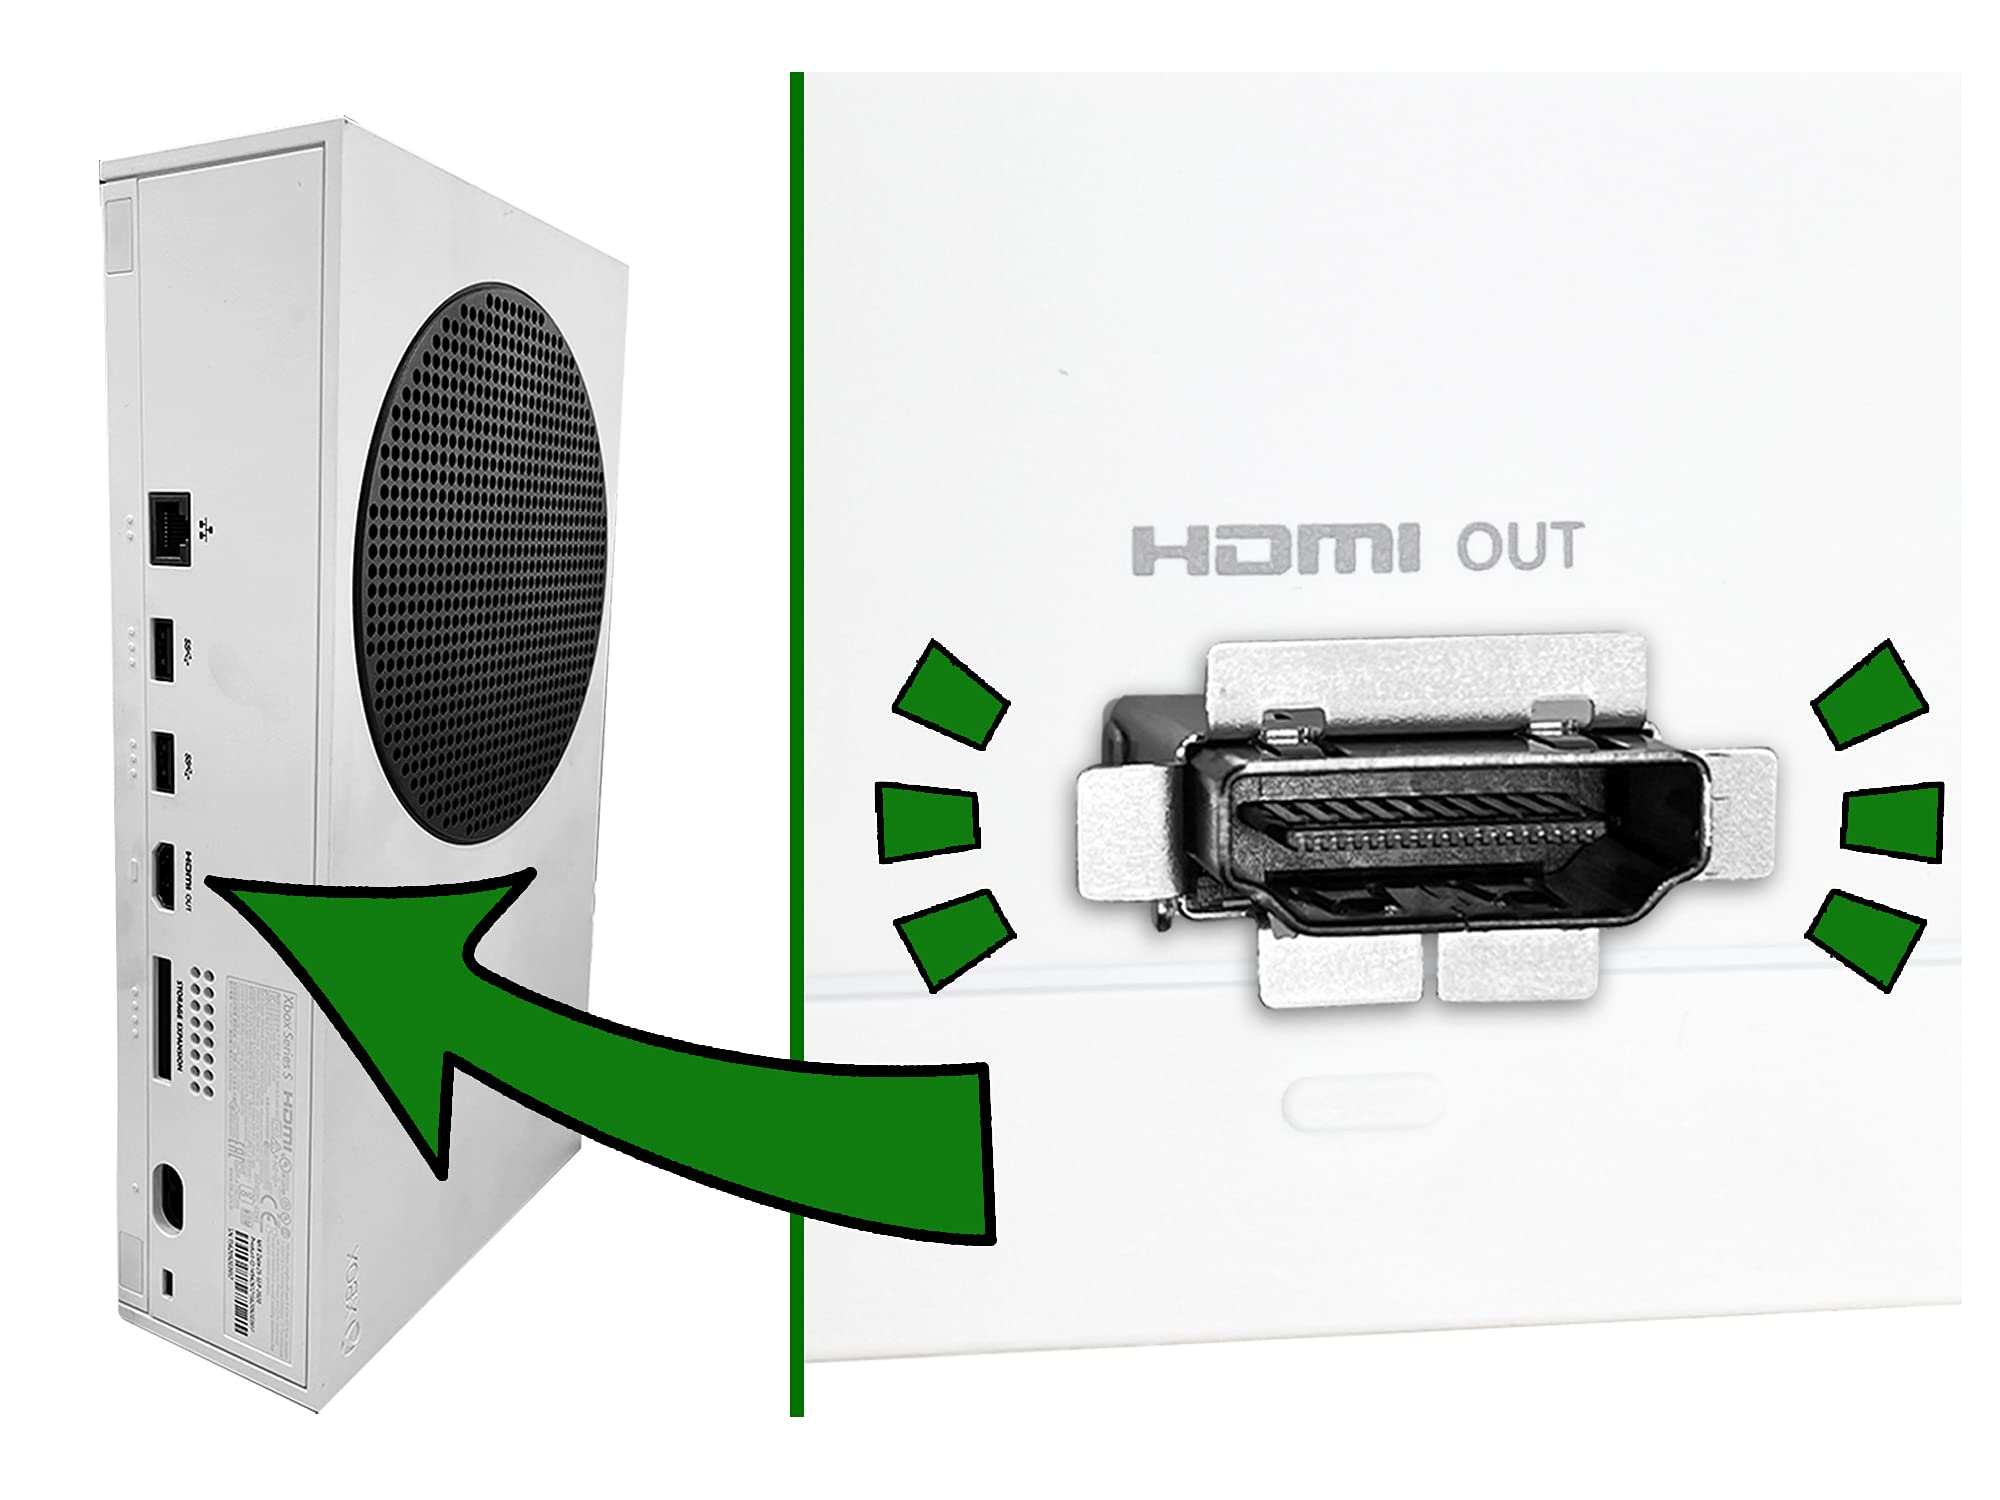 Xbox HDMI port